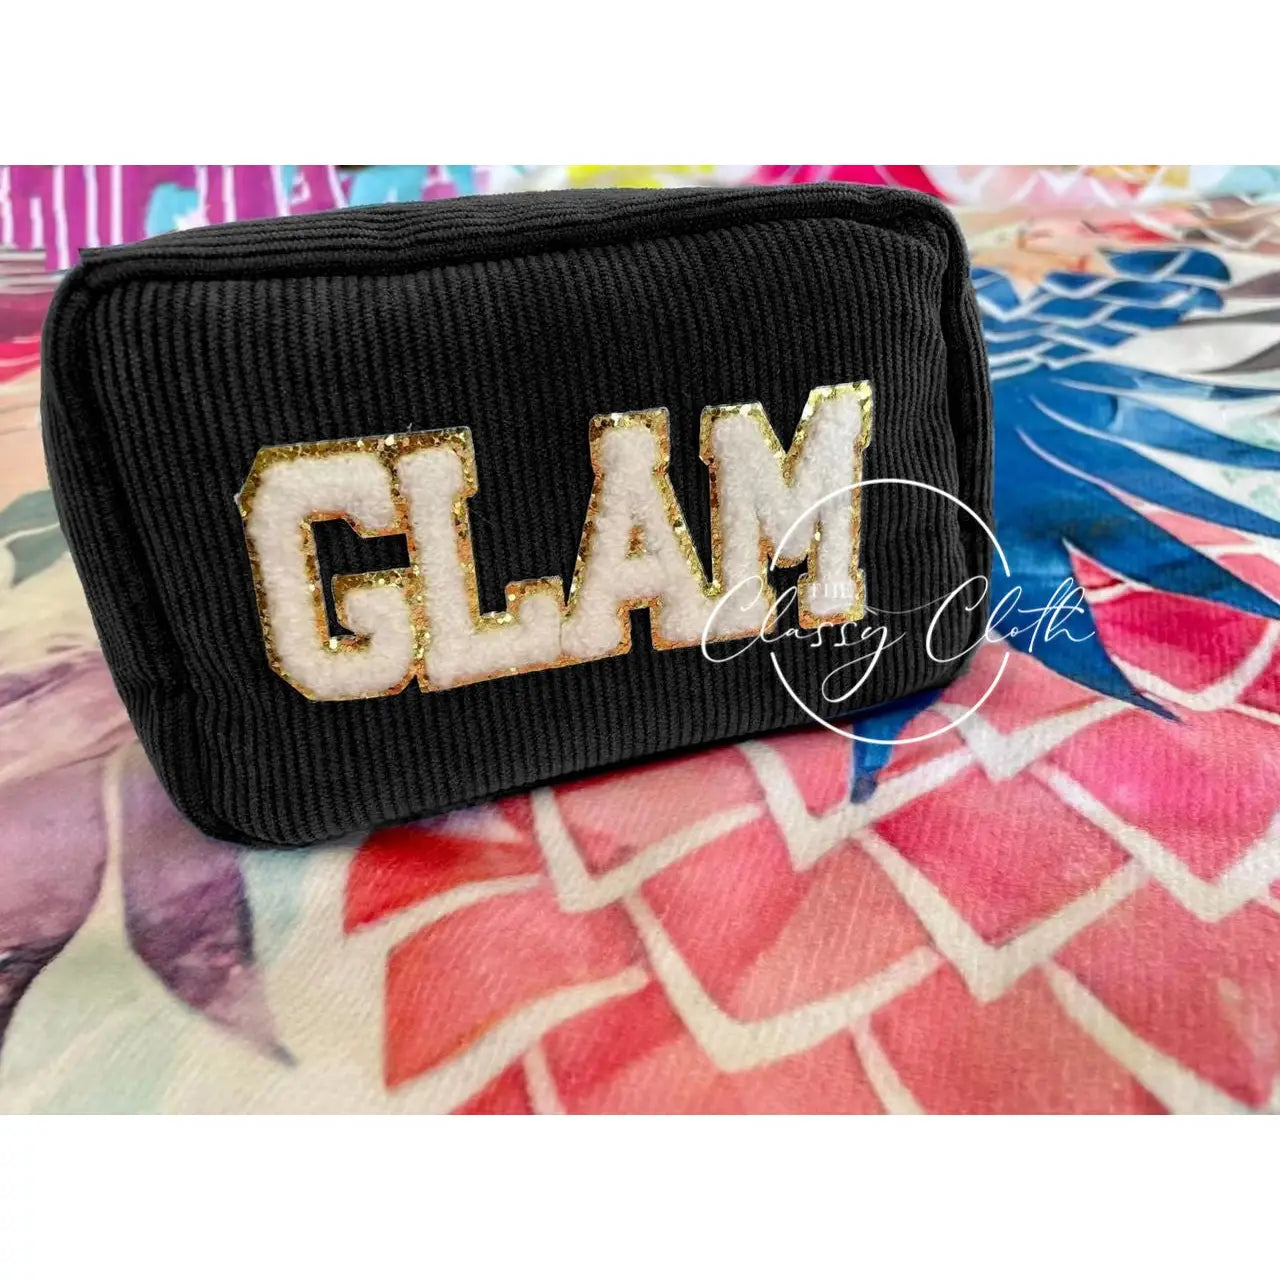 GLAM Makeup Bag